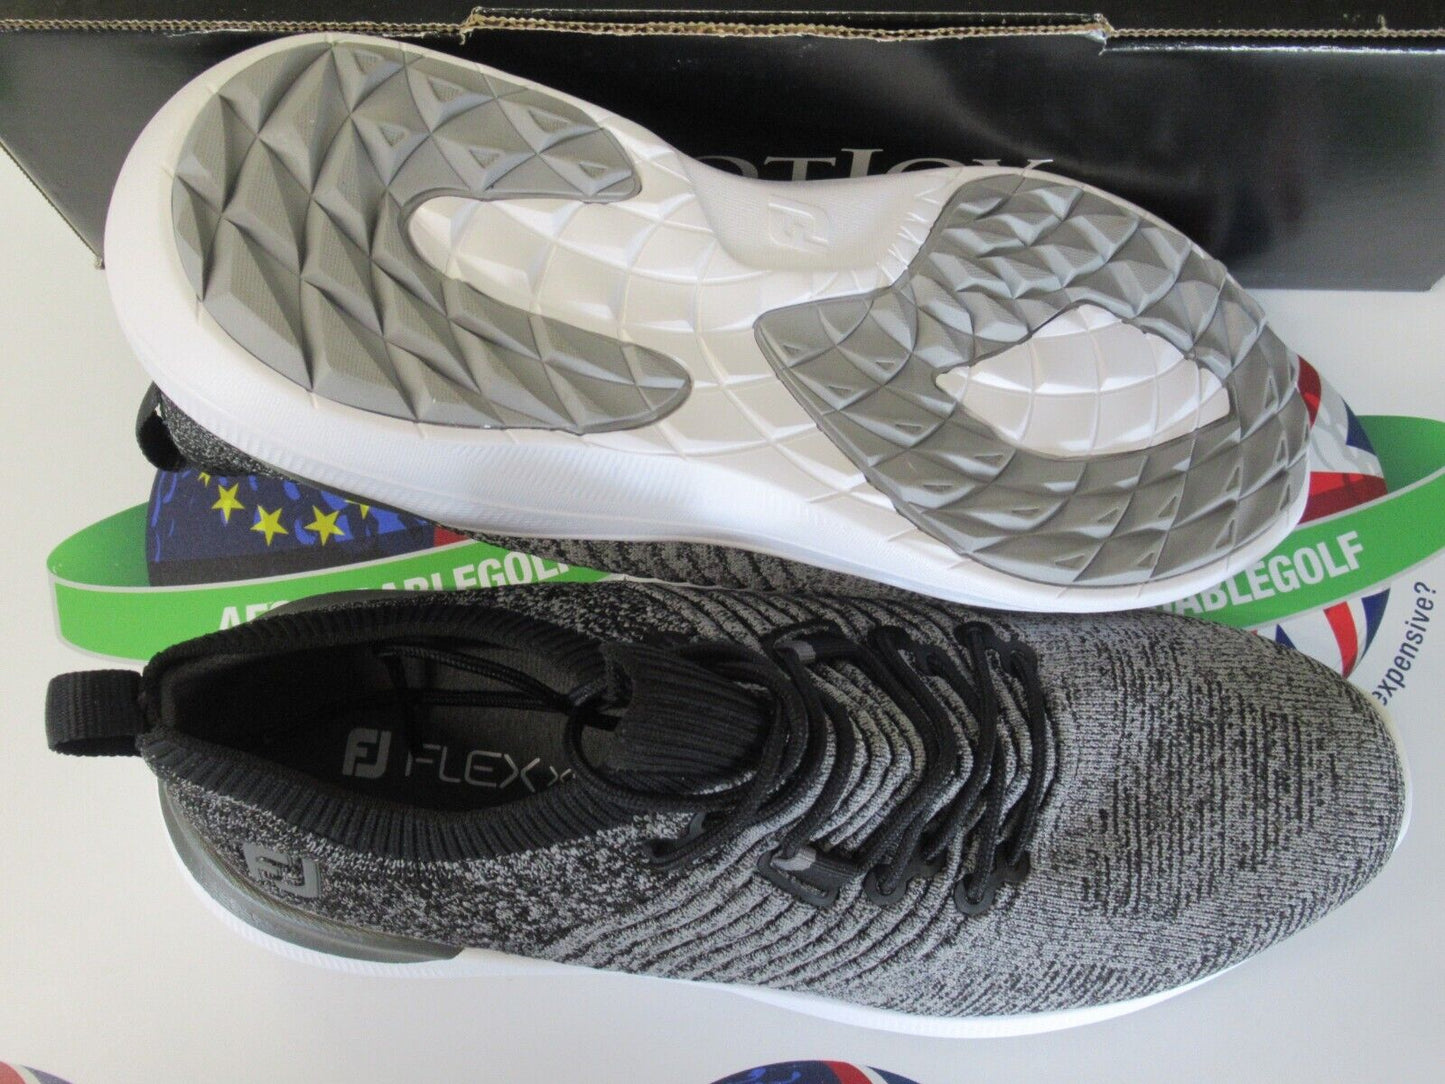 footjoy flex xp womens golf shoes black/grey 95336k uk size 6.5 medium